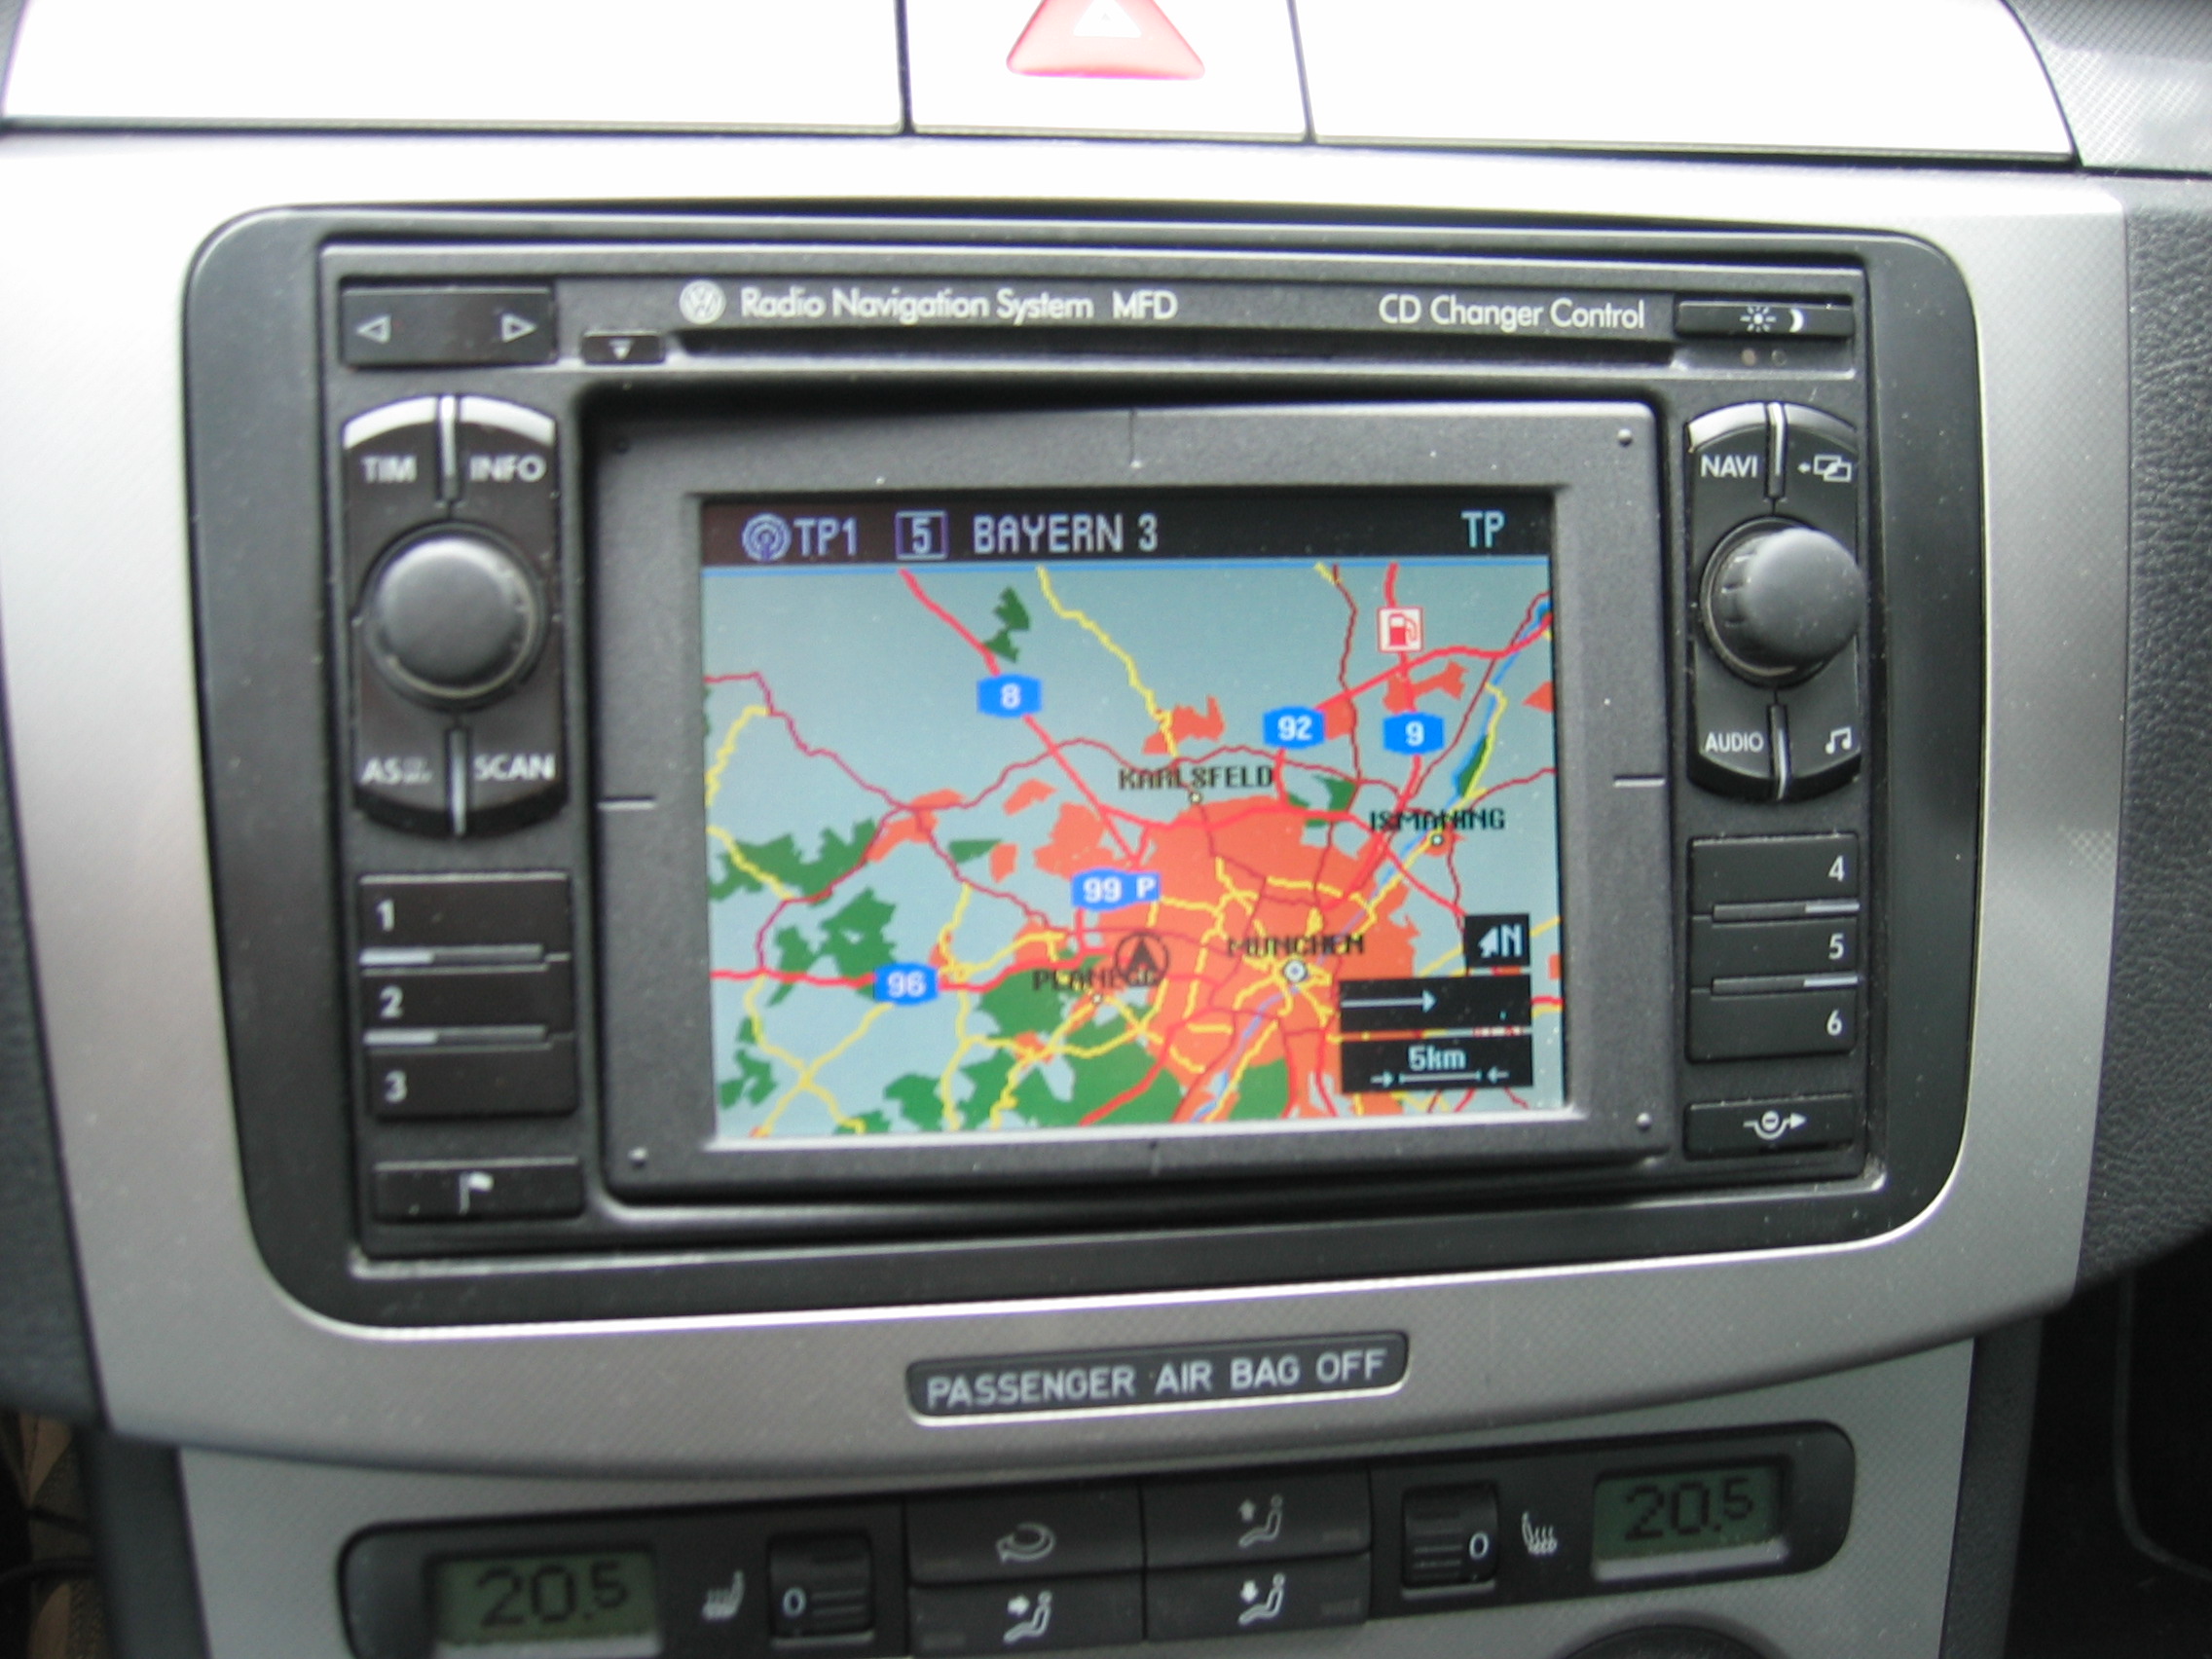 VW Radio Navigation System MFD + CD Wechsler + AUX in Biete Car Audio